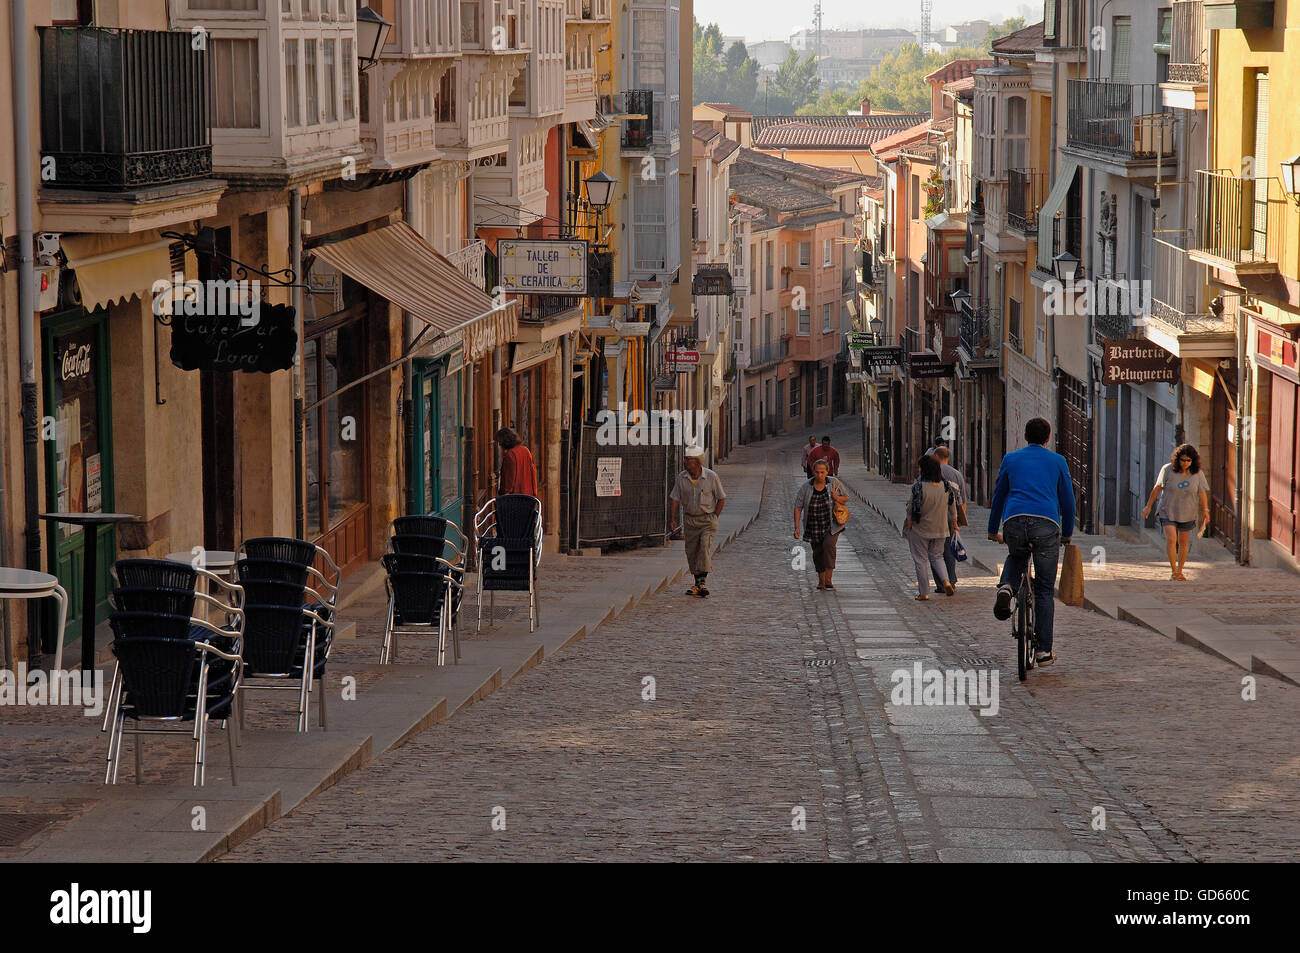 Zamora, Calle Balborraz, Old town, Castilla-Leon, Spain Stock Photo